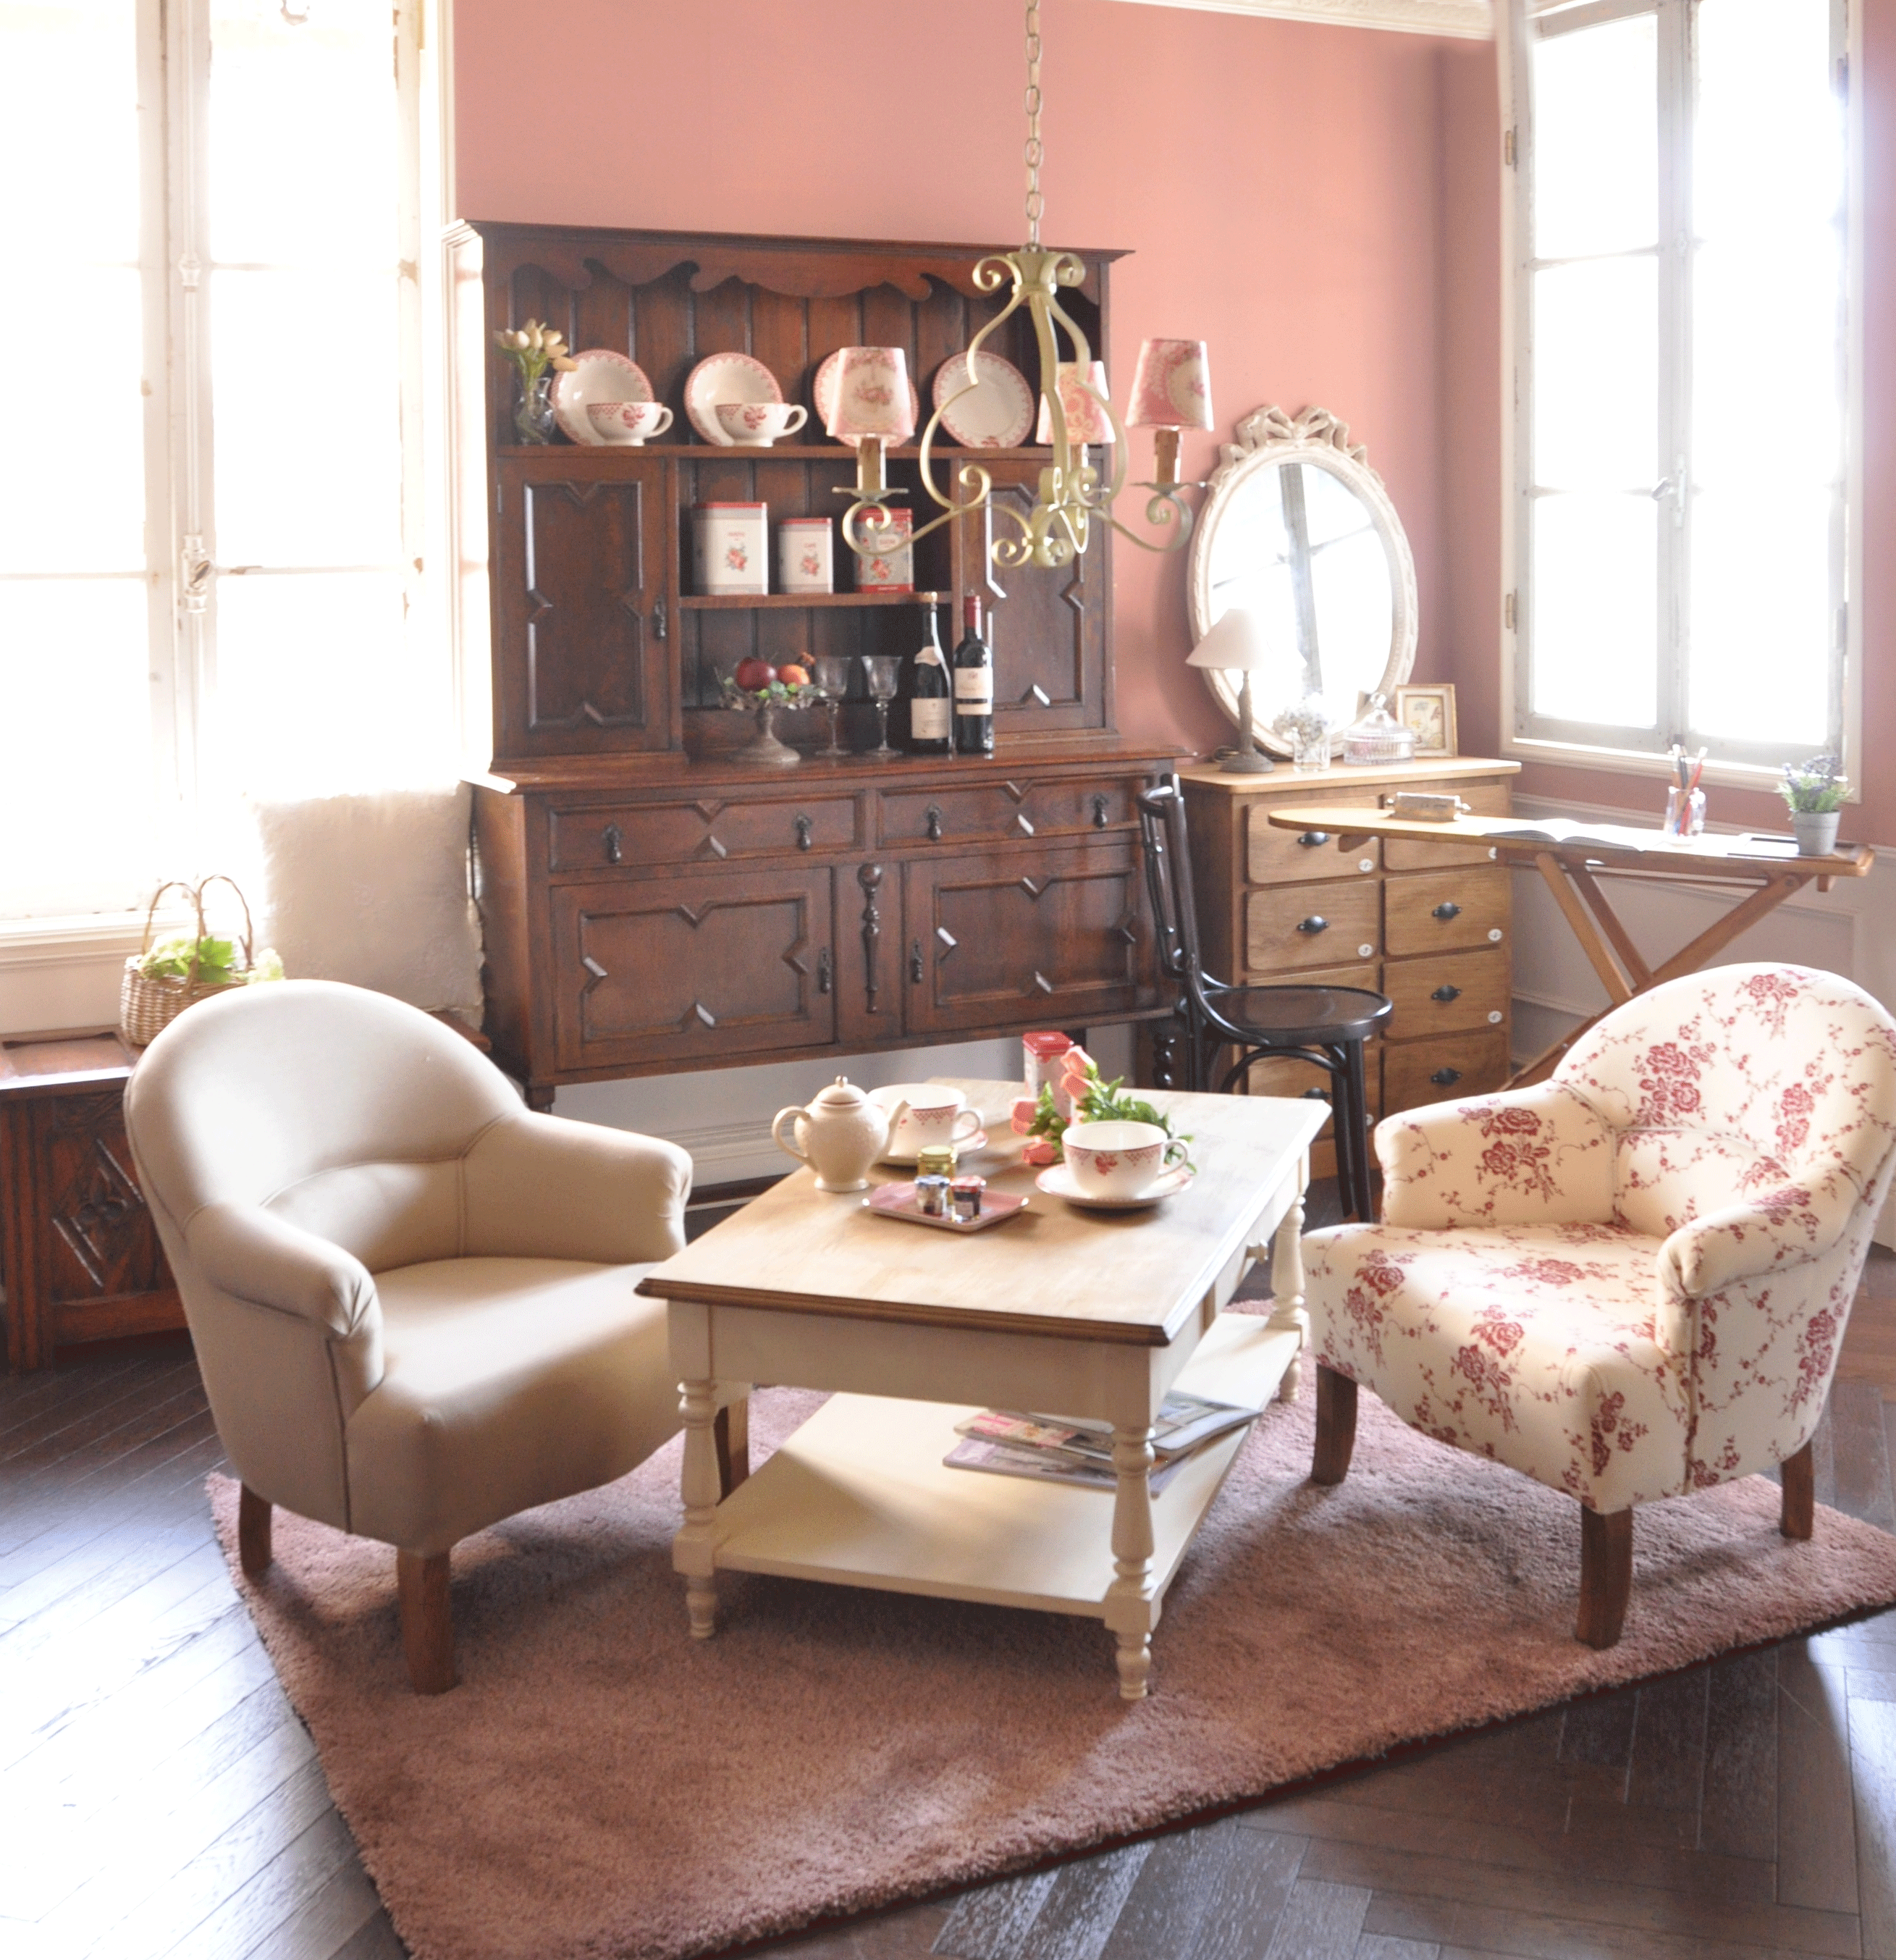 ナチュラルカントリーのリビング | コントワール・ドゥ・ファミーユの家具でフランス風の可愛いリビング